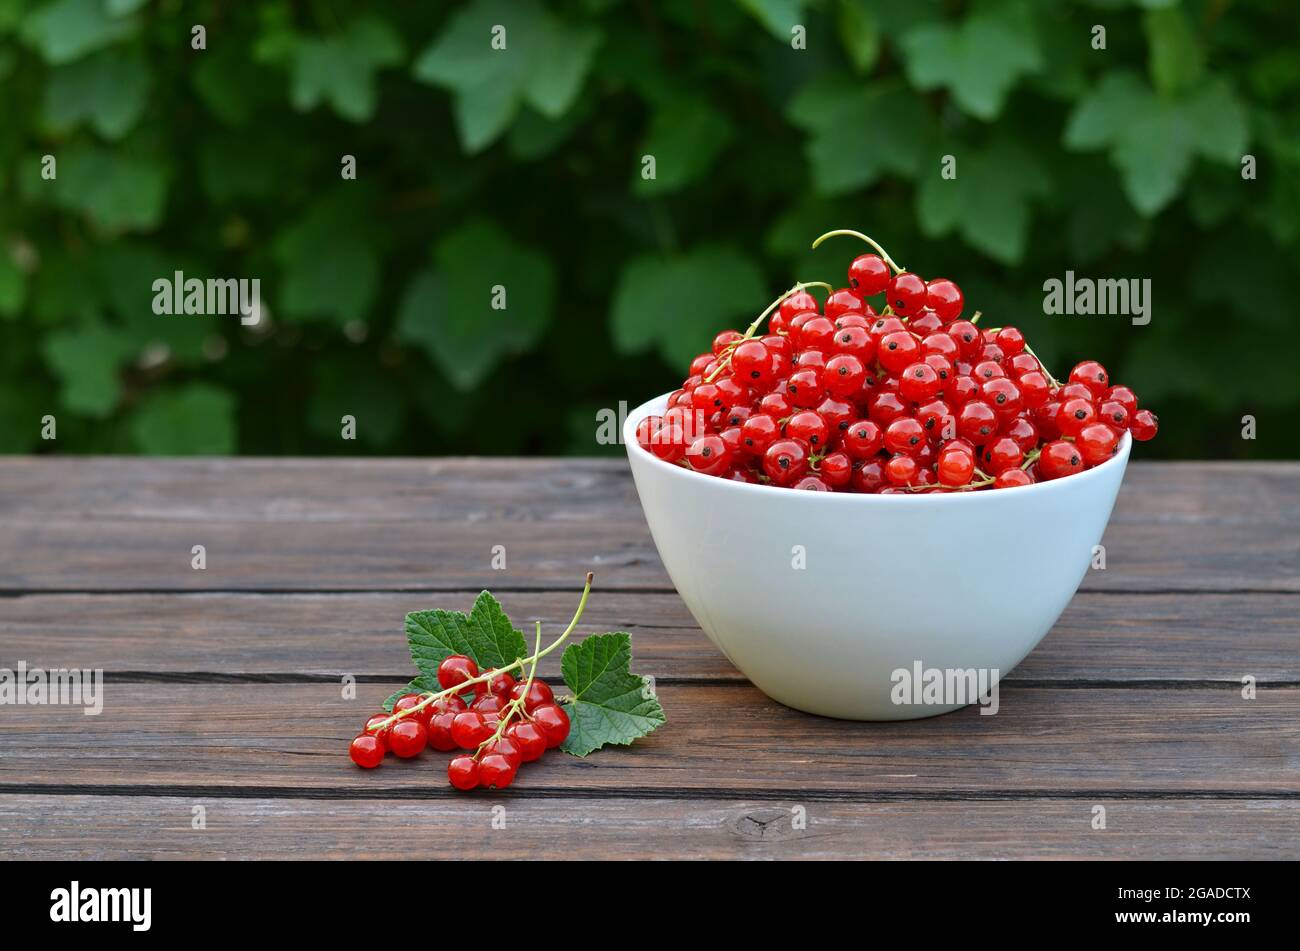 Frisch gepflückte rote Johannisbeere in einer weißen Schale auf einem rustikalen Holztisch. Konzept Bio-Gartenarbeit. Stockfoto